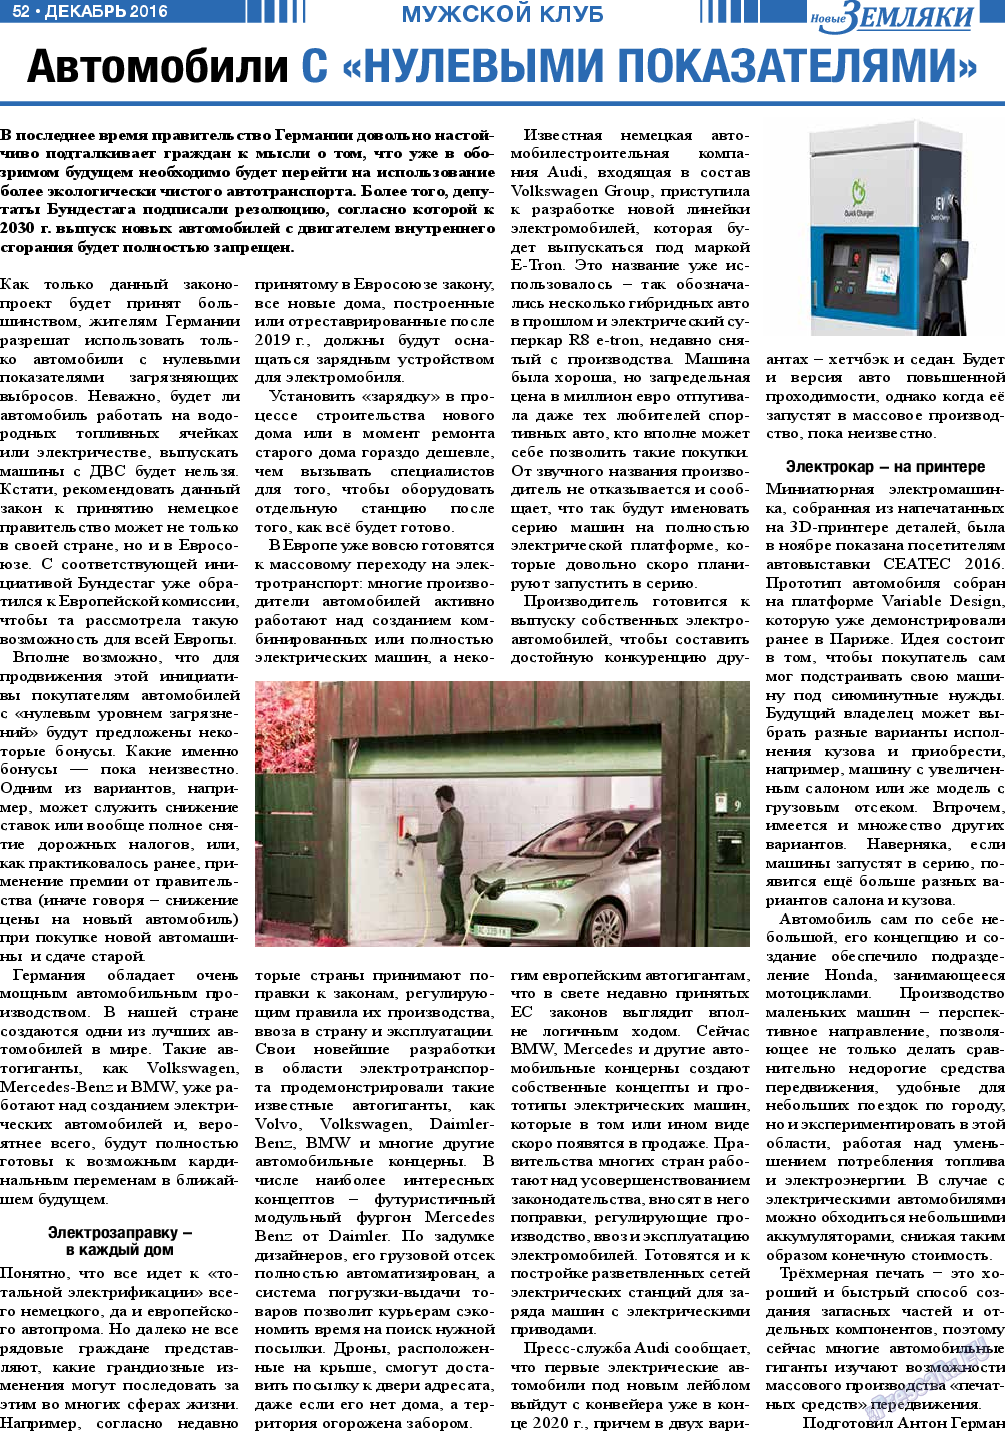 Новые Земляки, газета. 2016 №12 стр.52